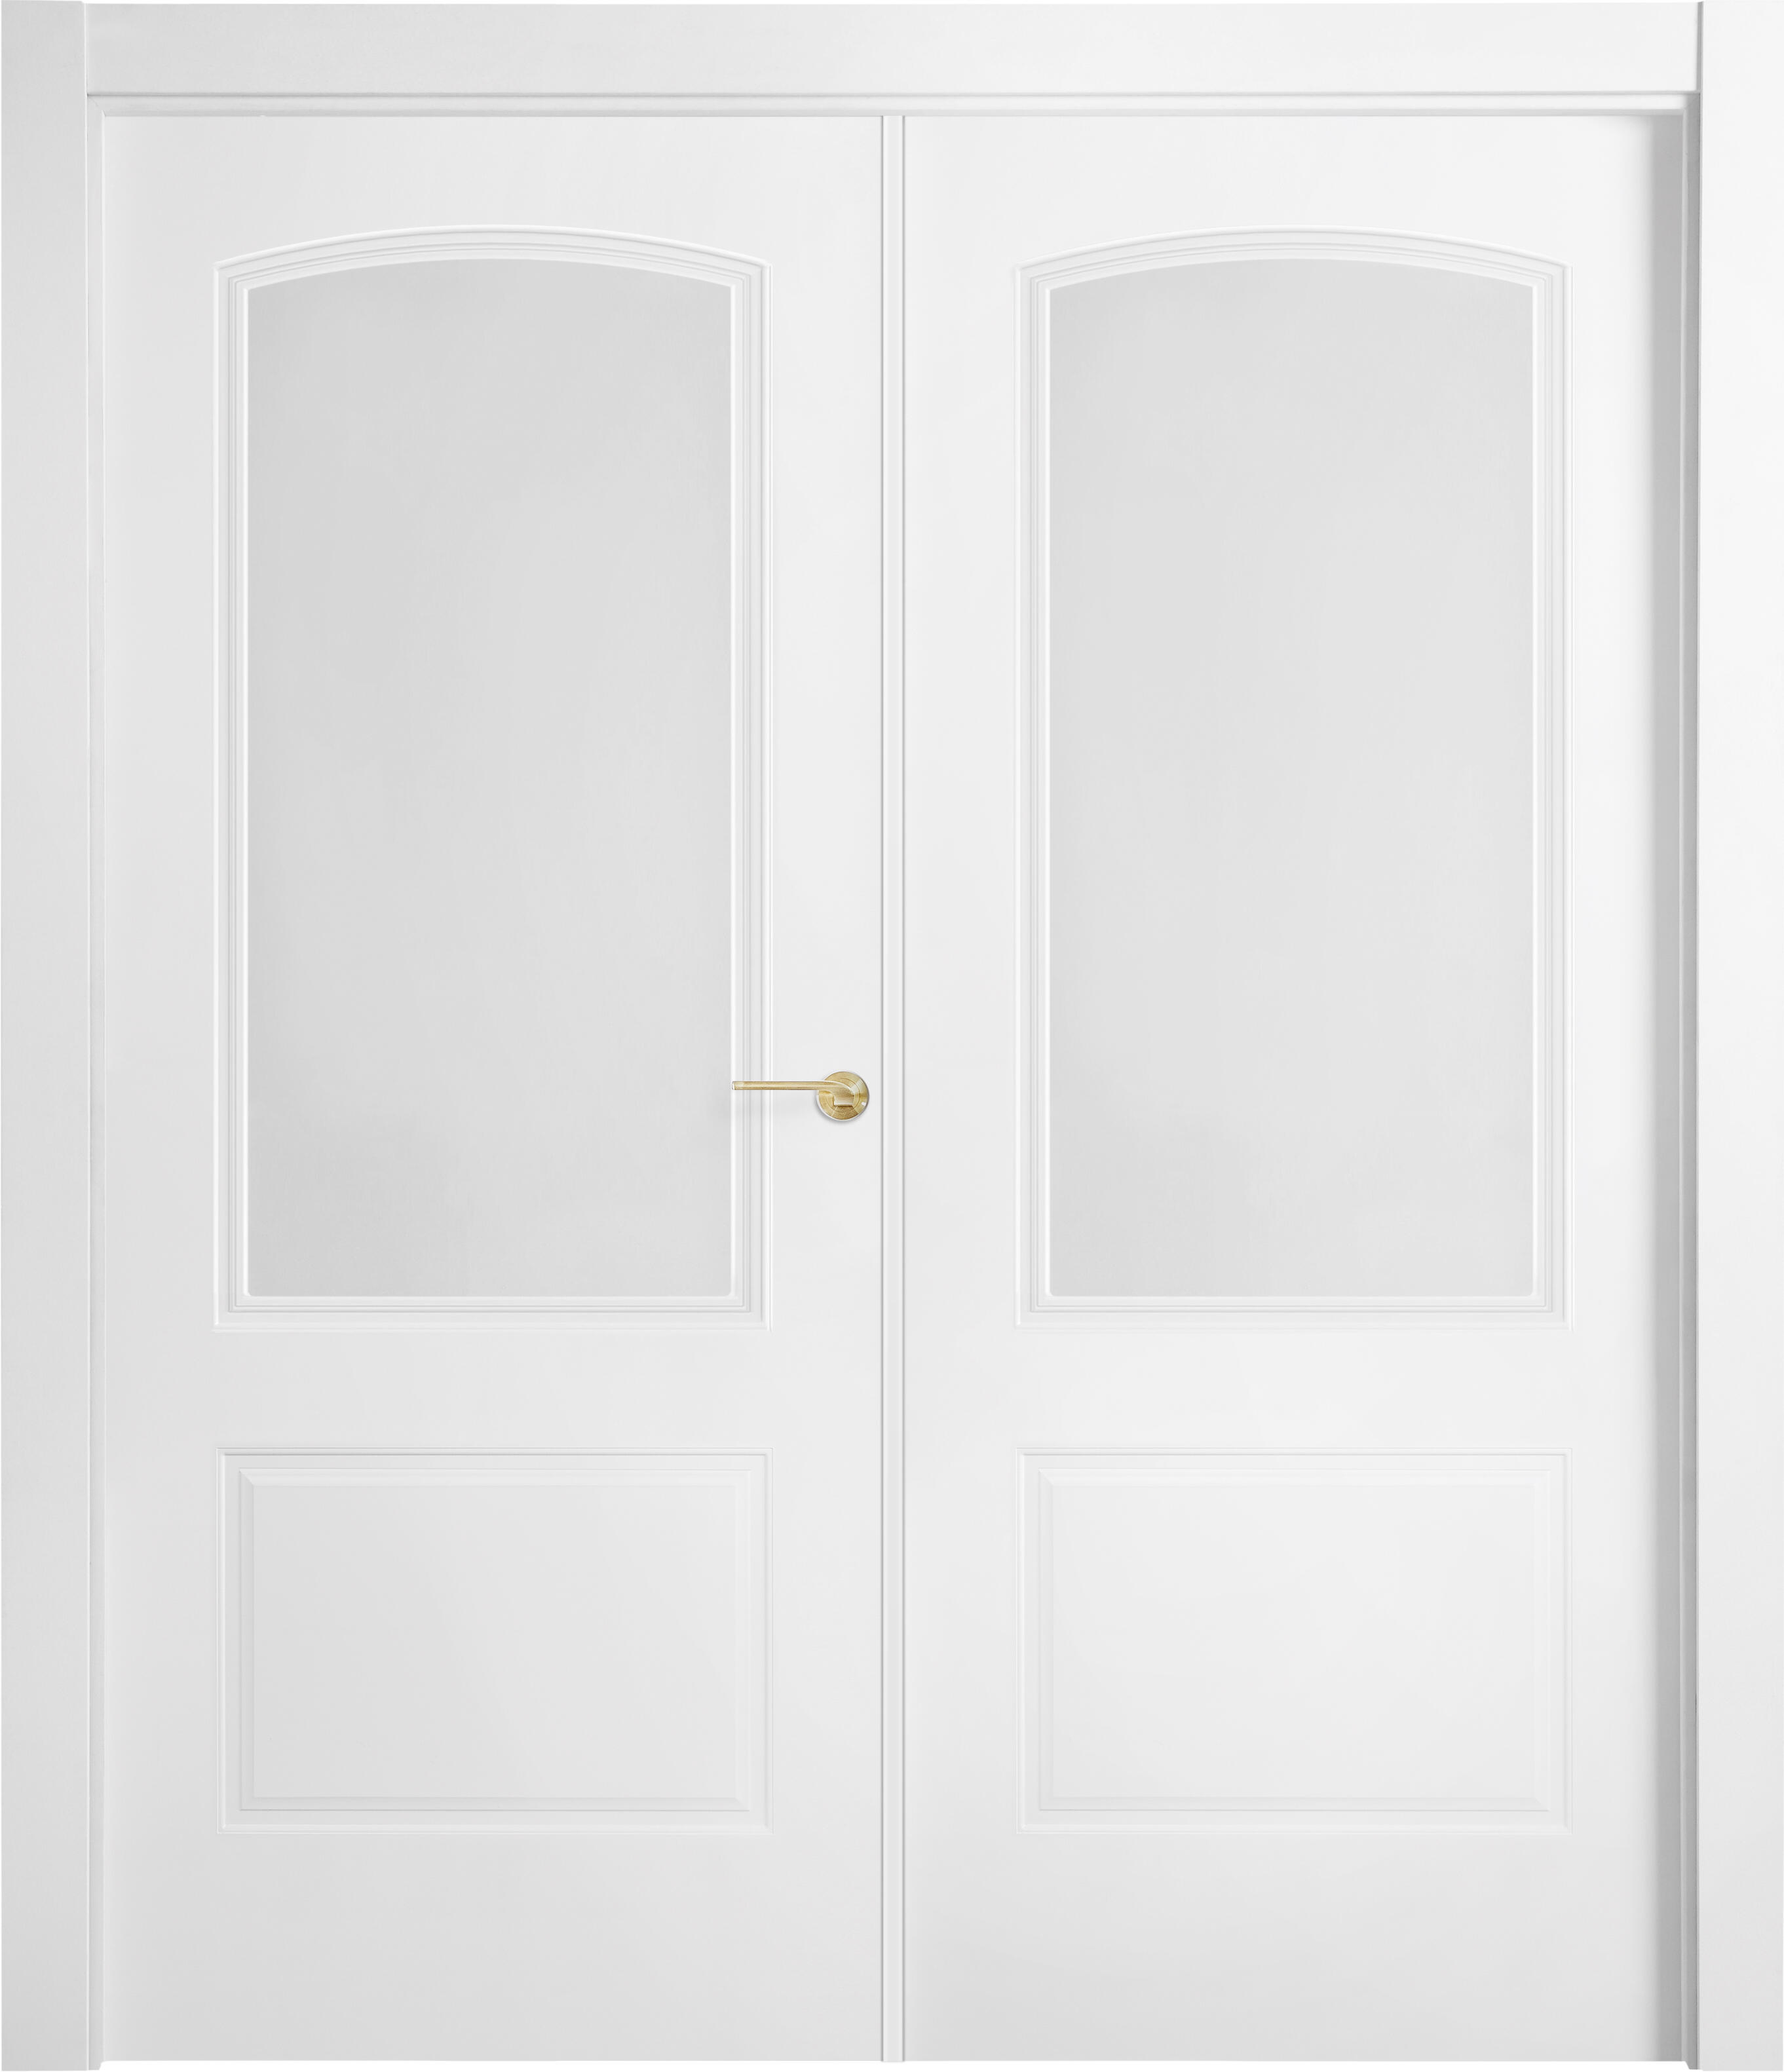 Puerta abatible berlin blanca line plus con cristal blanco derecha de 125 cm